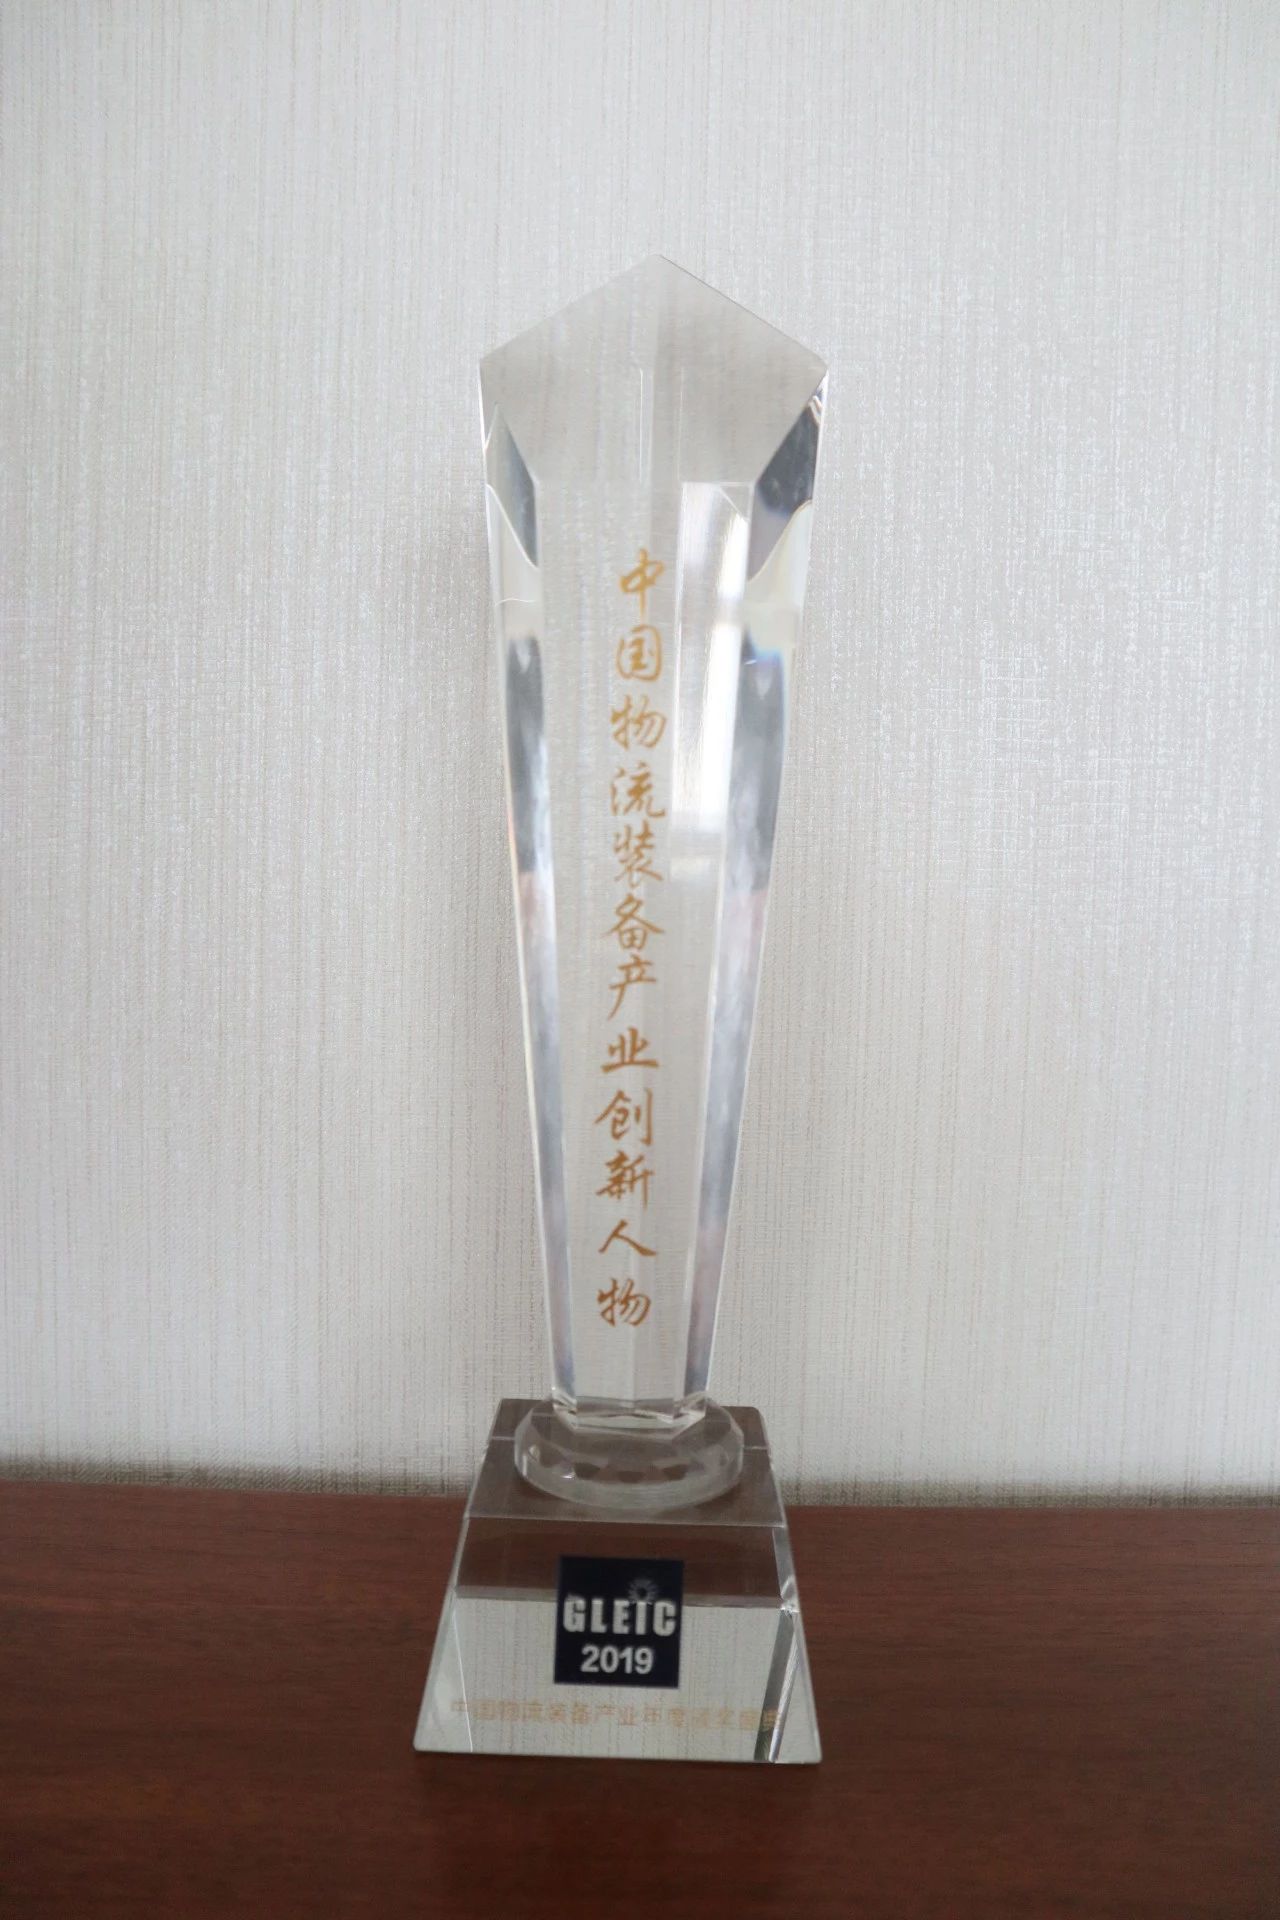 新闻 | 宝开荣获“物流装备产业产品技术创新奖”与“中国物流装备产业创新人物”两项荣誉